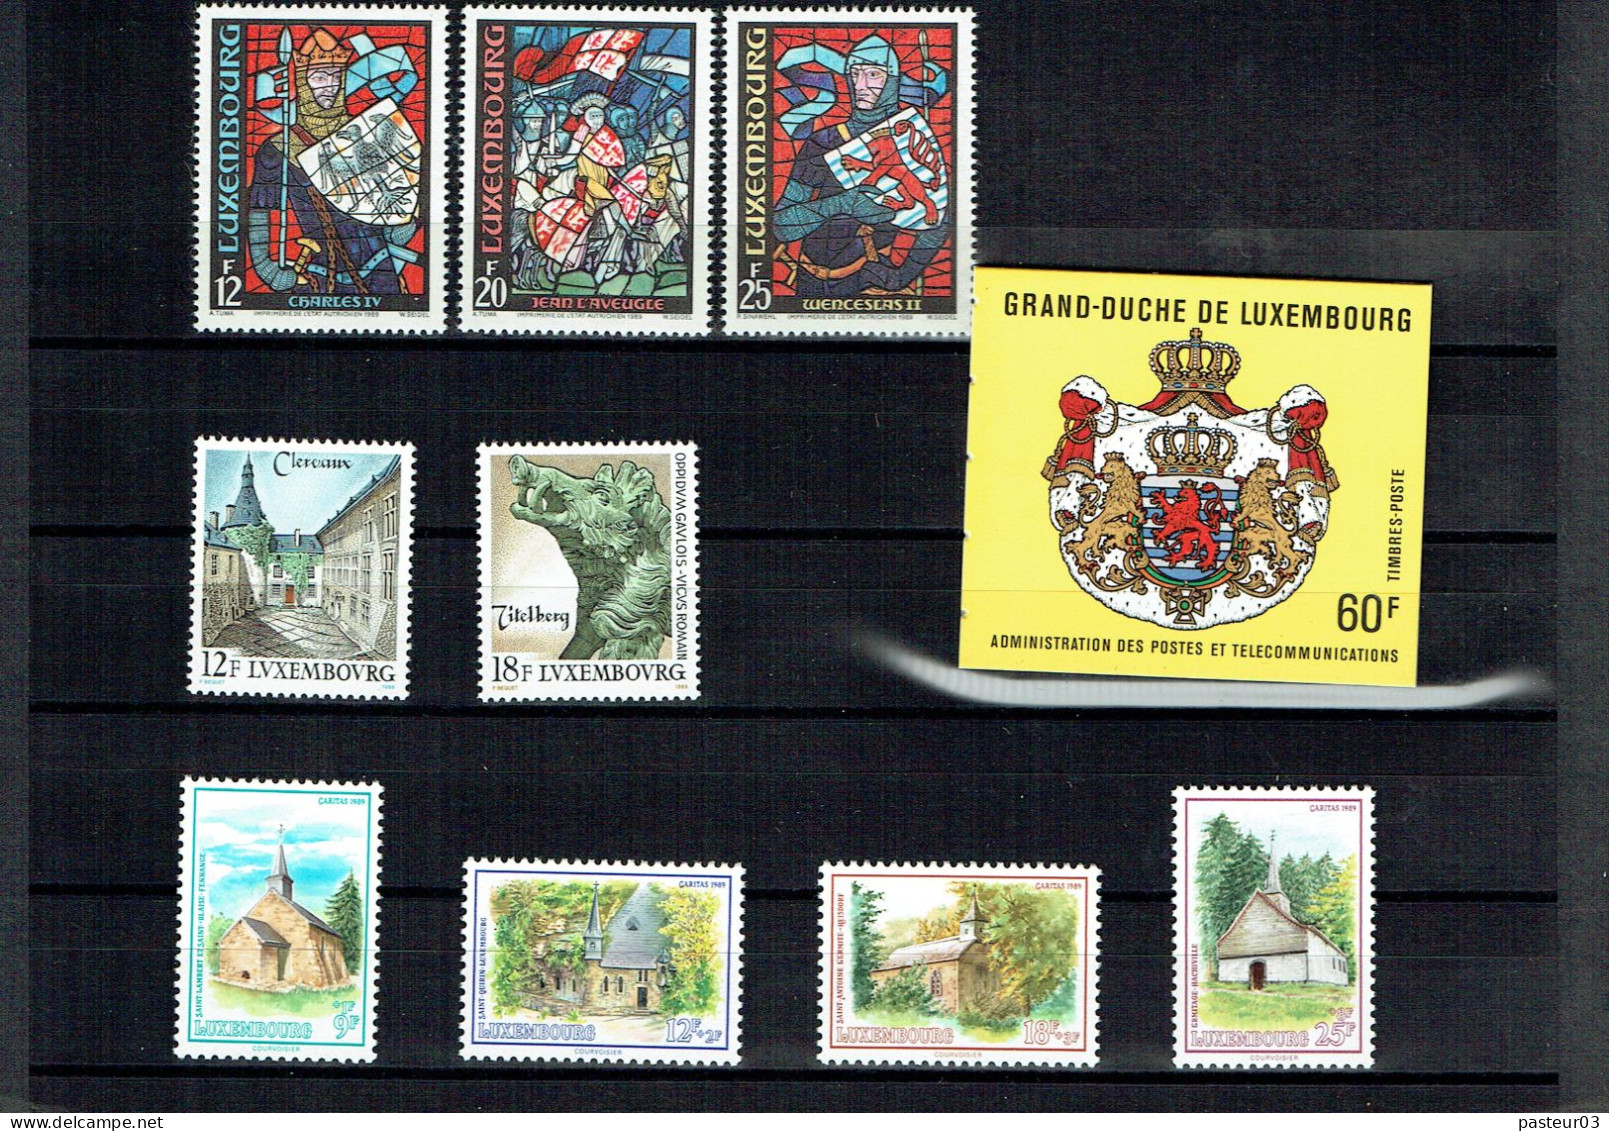 Luxembourg Joli Lot De 1989 à 1993 Présenté Dans Emballage Cartonné P & T Luxembourg Publicité Juvalux 1998 - Sammlungen